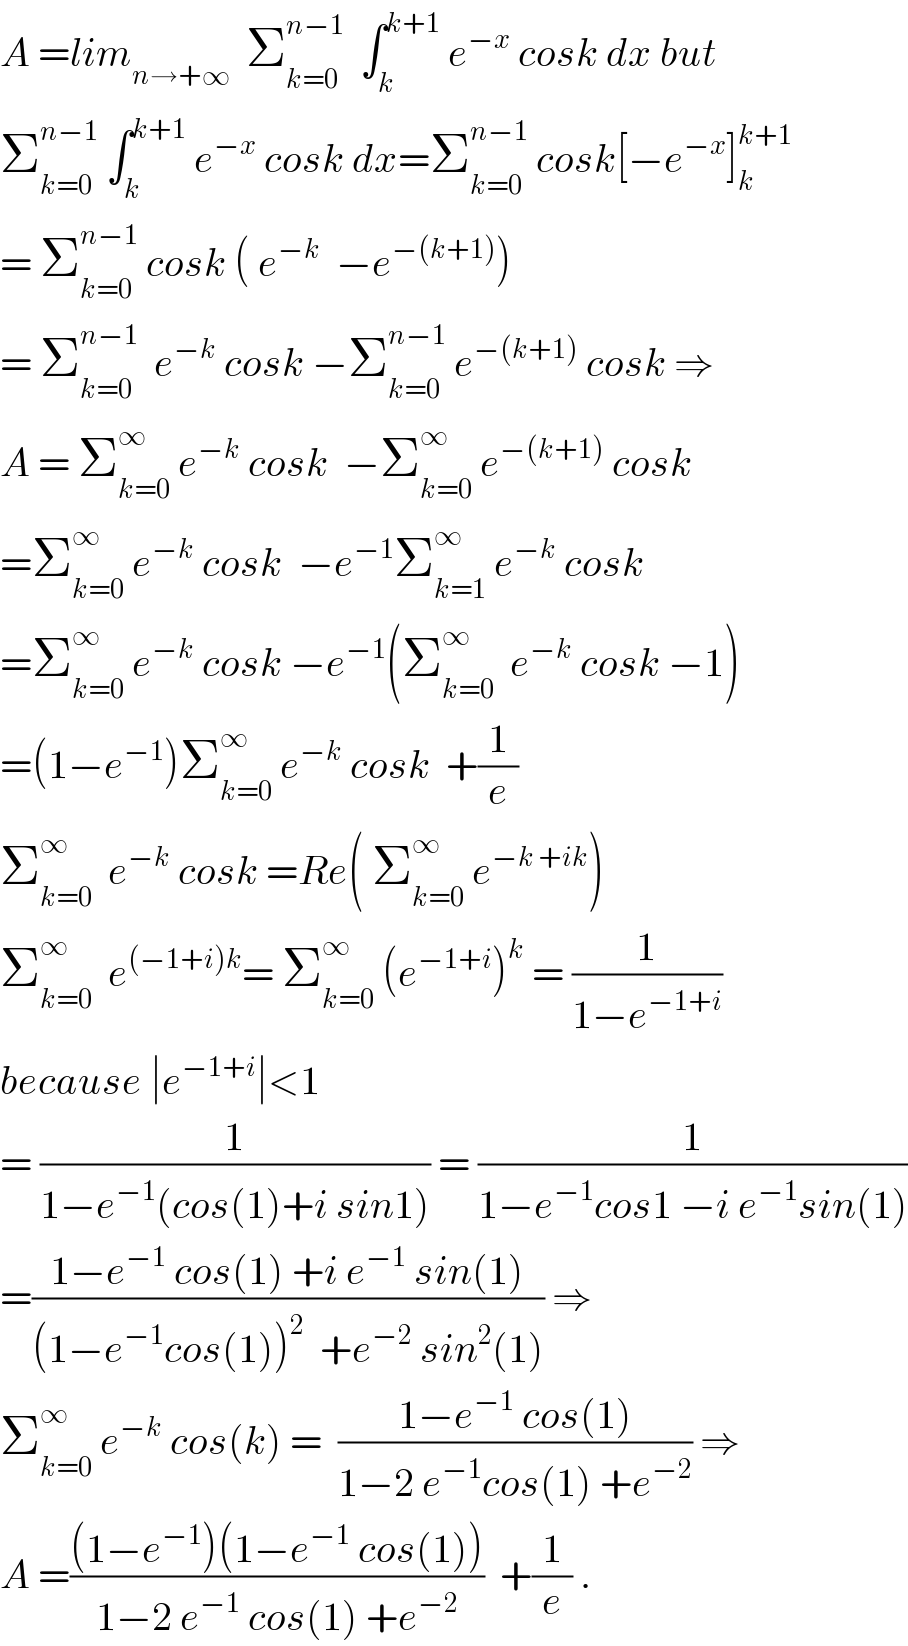 A =lim_(n→+∞)   Σ_(k=0) ^(n−1)   ∫_k ^(k+1)  e^(−x)  cosk dx but  Σ_(k=0) ^(n−1)  ∫_k ^(k+1)  e^(−x)  cosk dx=Σ_(k=0) ^(n−1)  cosk[−e^(−x) ]_k ^(k+1)   = Σ_(k=0) ^(n−1)  cosk ( e^(−k)   −e^(−(k+1)) )  = Σ_(k=0) ^(n−1)   e^(−k)  cosk −Σ_(k=0) ^(n−1)  e^(−(k+1))  cosk ⇒  A = Σ_(k=0) ^∞  e^(−k)  cosk  −Σ_(k=0) ^∞  e^(−(k+1))  cosk  =Σ_(k=0) ^∞  e^(−k)  cosk  −e^(−1) Σ_(k=1) ^∞  e^(−k)  cosk  =Σ_(k=0) ^∞  e^(−k)  cosk −e^(−1) (Σ_(k=0) ^∞   e^(−k)  cosk −1)  =(1−e^(−1) )Σ_(k=0) ^∞  e^(−k)  cosk  +(1/e)  Σ_(k=0) ^∞   e^(−k)  cosk =Re( Σ_(k=0) ^∞  e^(−k +ik) )  Σ_(k=0) ^∞   e^((−1+i)k) = Σ_(k=0) ^∞  (e^(−1+i) )^k  = (1/(1−e^(−1+i) ))  because ∣e^(−1+i) ∣<1  = (1/(1−e^(−1) (cos(1)+i sin1))) = (1/(1−e^(−1) cos1 −i e^(−1) sin(1)))  =((1−e^(−1)  cos(1) +i e^(−1)  sin(1))/((1−e^(−1) cos(1))^2   +e^(−2)  sin^2 (1))) ⇒  Σ_(k=0) ^∞  e^(−k)  cos(k) =  ((1−e^(−1)  cos(1))/(1−2 e^(−1) cos(1) +e^(−2) )) ⇒  A =(((1−e^(−1) )(1−e^(−1)  cos(1)))/(1−2 e^(−1)  cos(1) +e^(−2) ))  +(1/e) .  